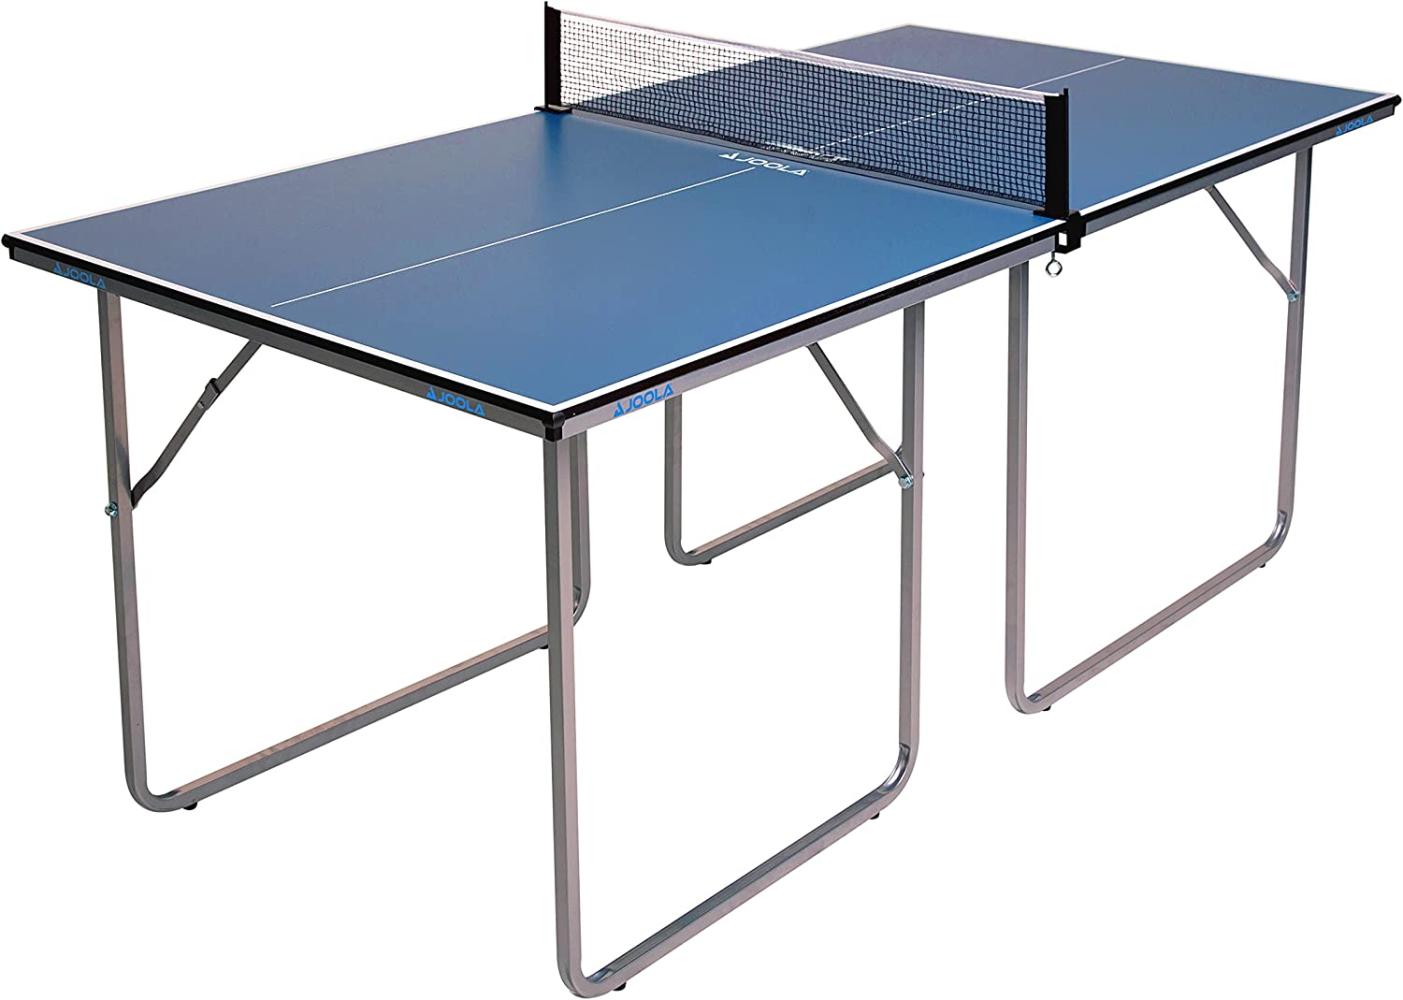 Joola Indoor-Tischtennisplatte "Midsize" (inkl. Netzgarnitur), blau Bild 1